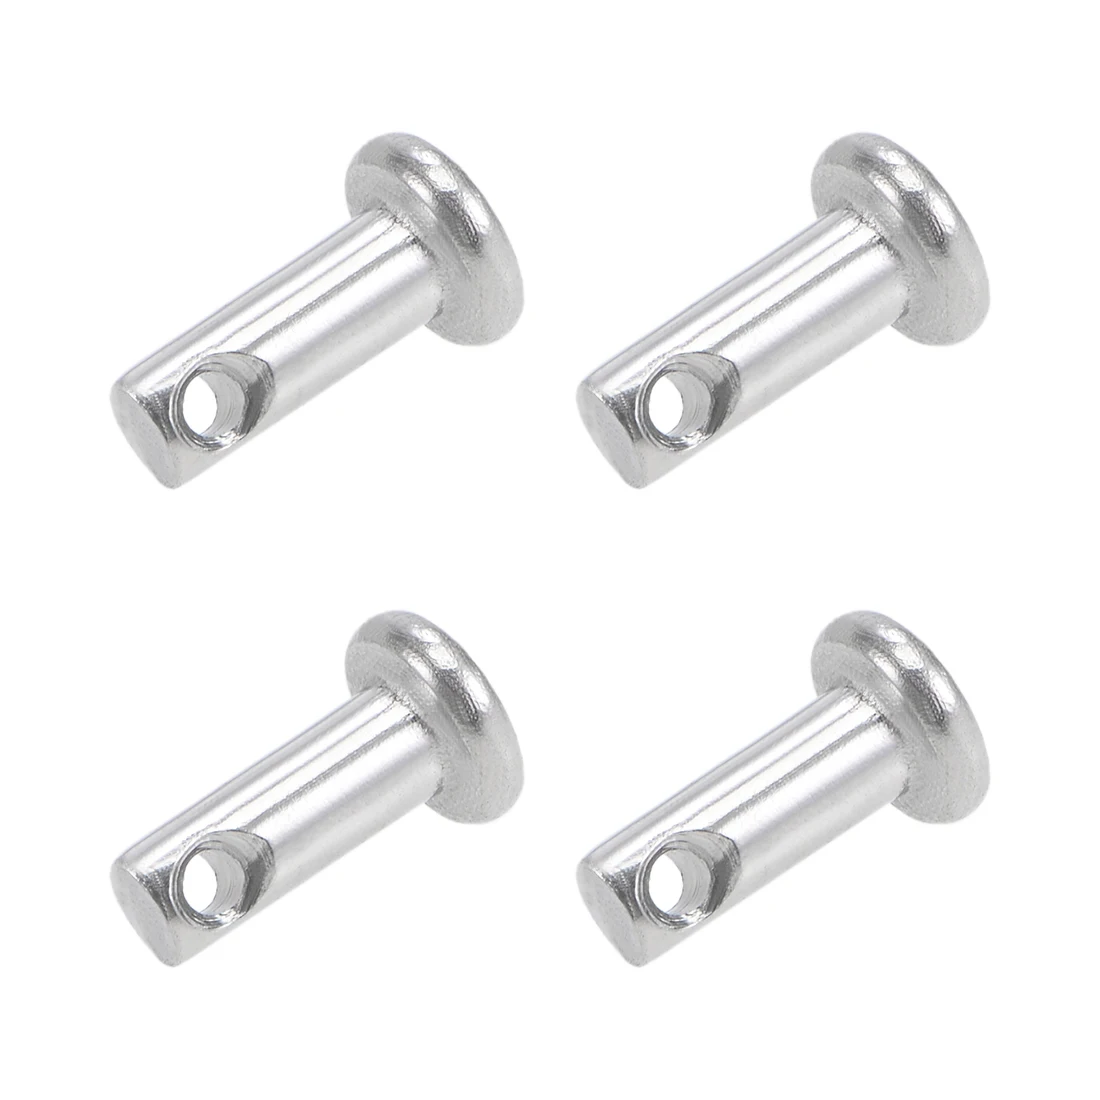 uxcell Single Hole Clevis Pins,5mm x 40mm Flat Head Zinc-Plating Steel 10 Pcs 